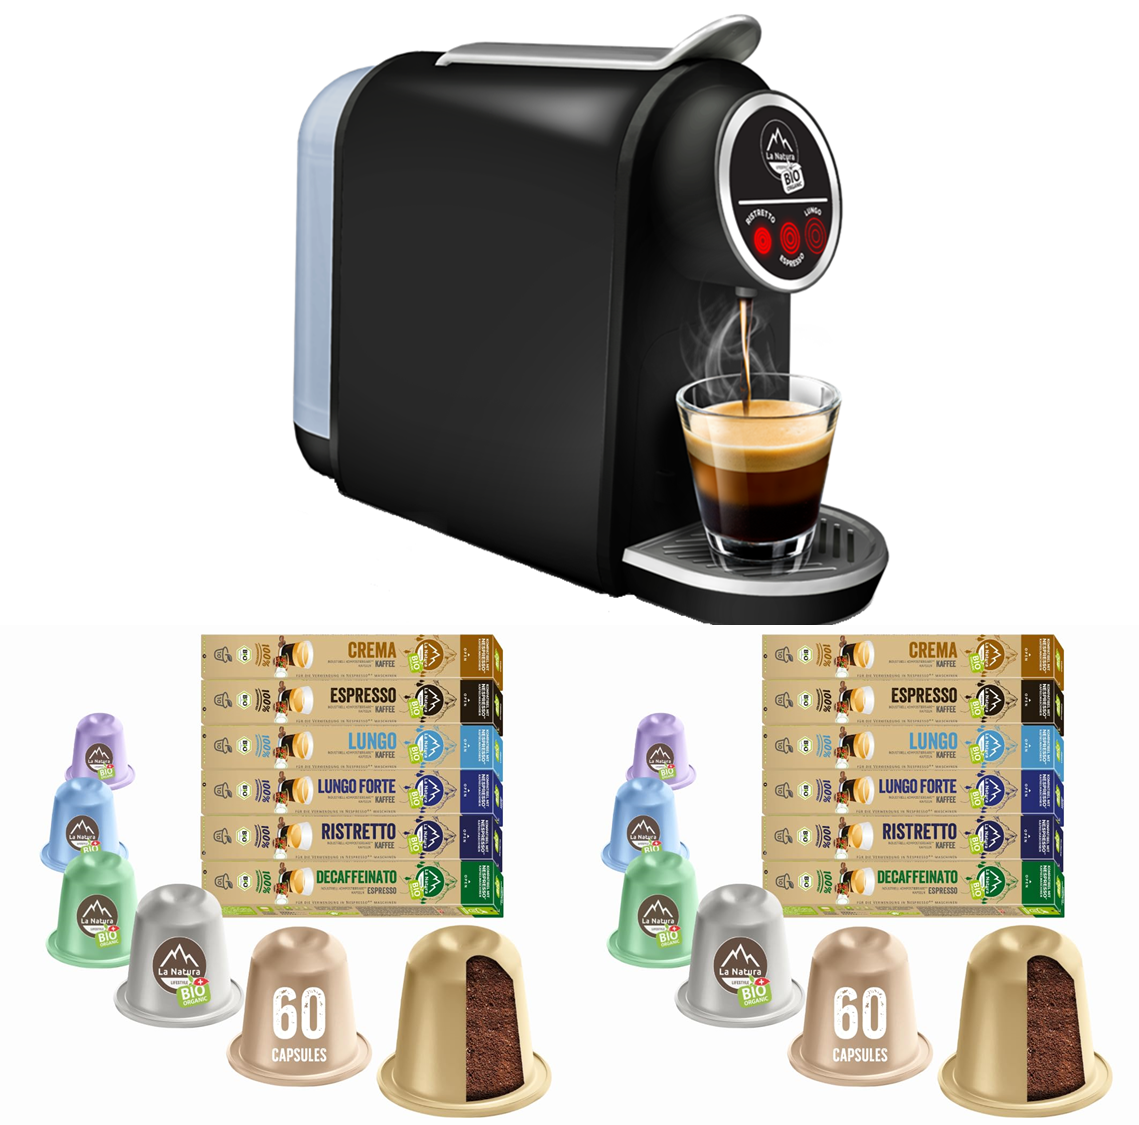 120 ORGANIC coffee capsules + capsule machine